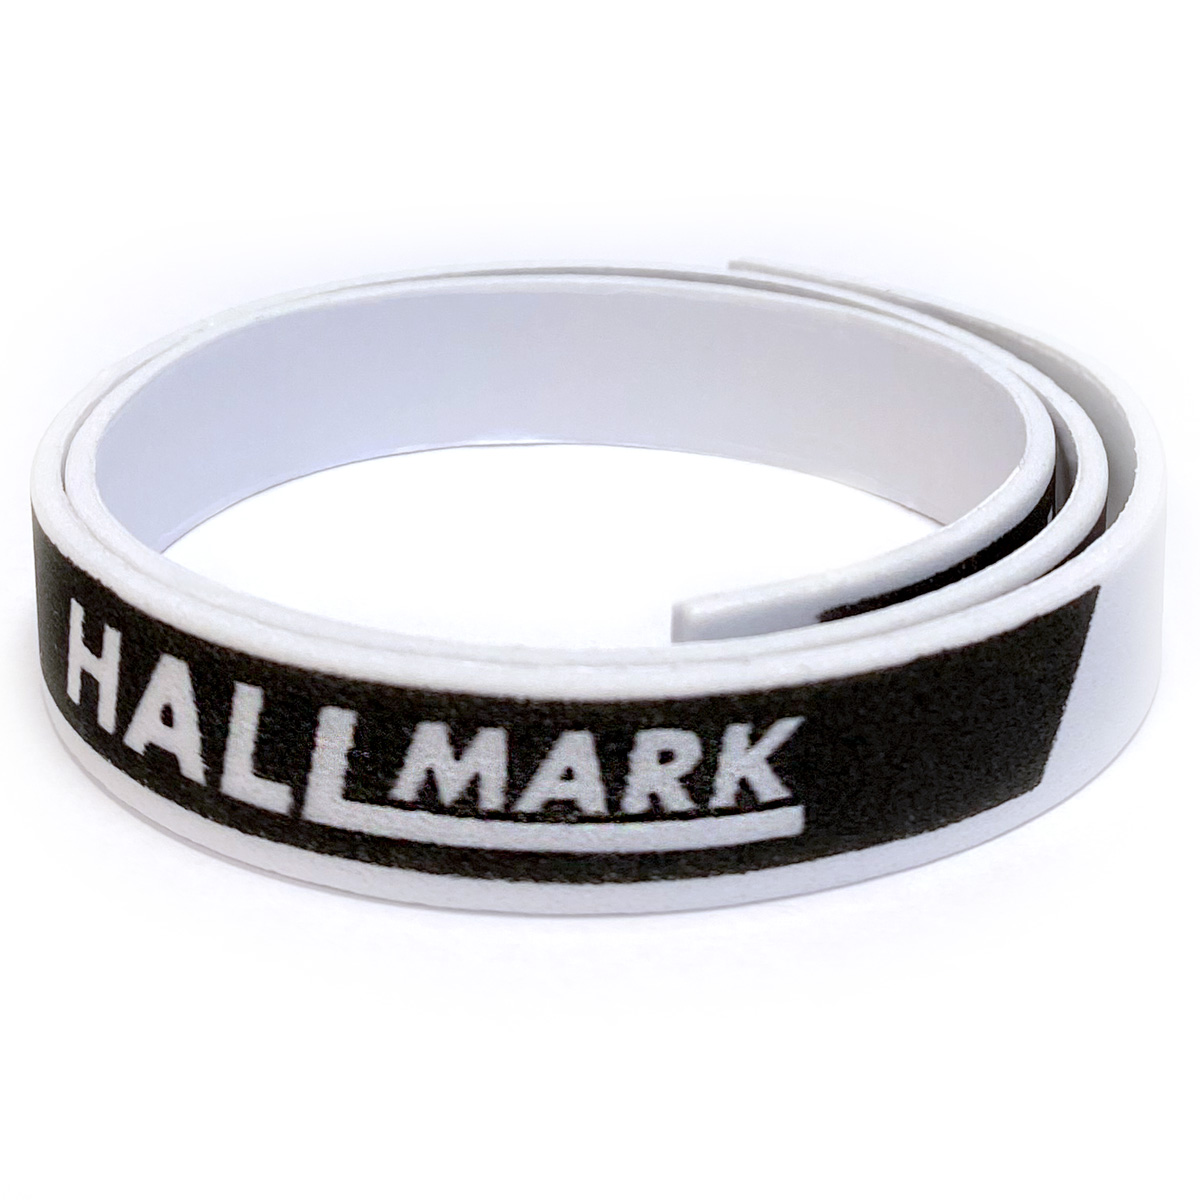 HALLMARK Kantenband 12mm für 1 Schläger schwarz/weiß